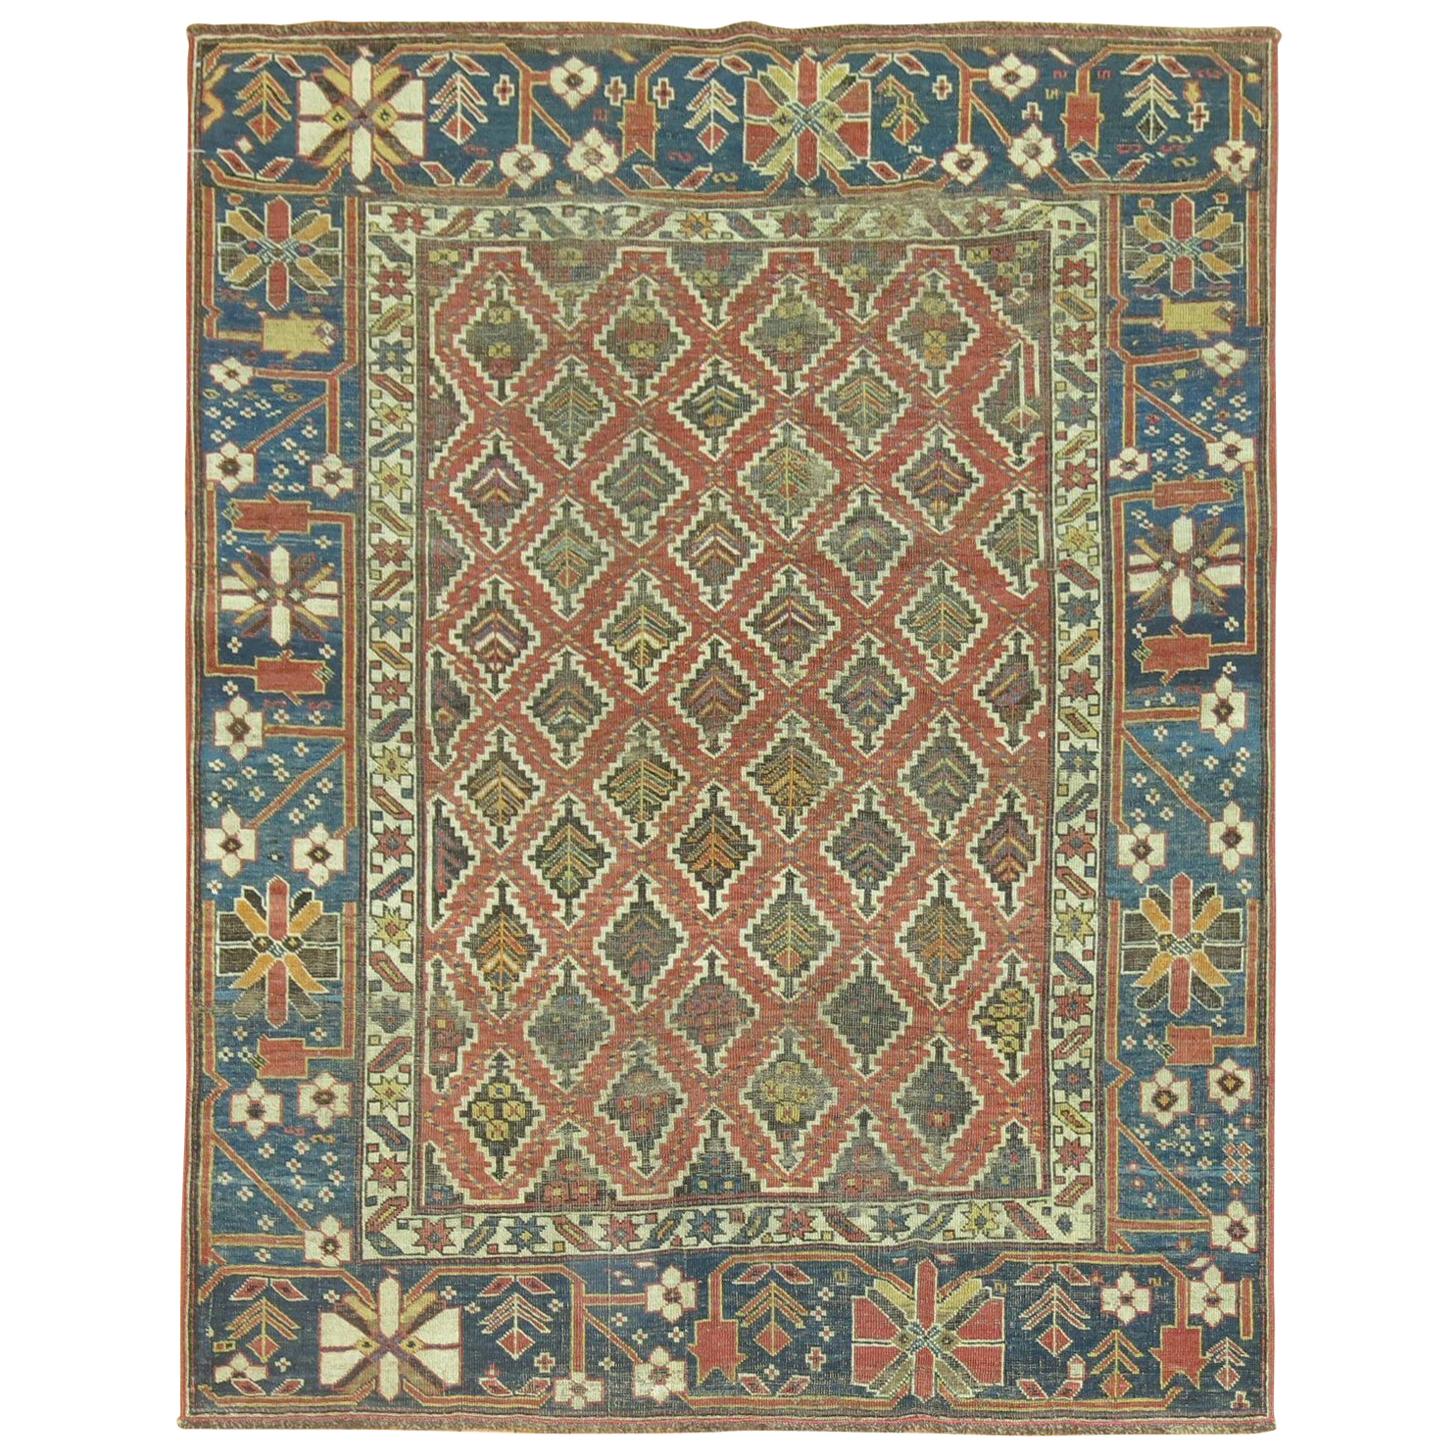 Rustikaler kaukasischer Stammeskunst-Teppich aus dem 19. Jahrhundert